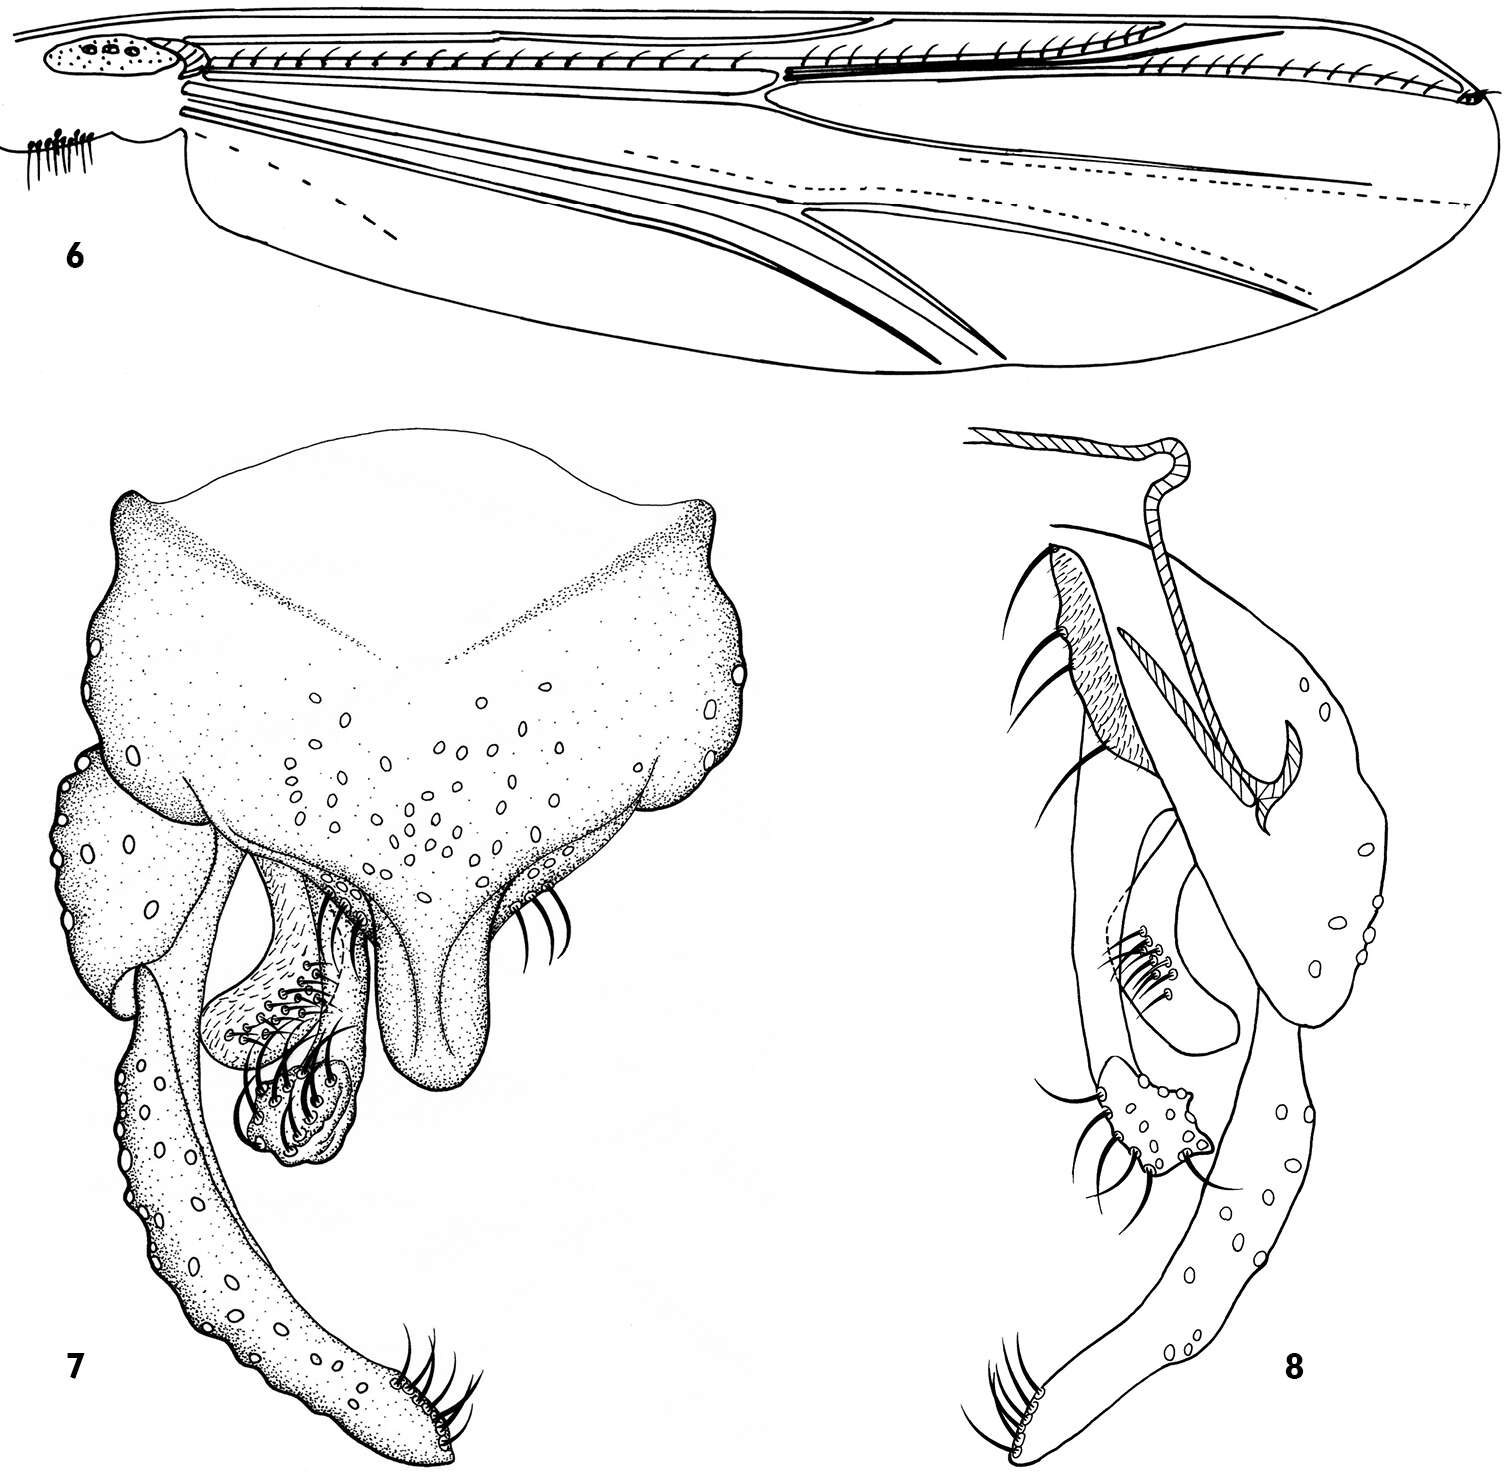 Image of <i>Dicrotendipes saetanumerosus</i>